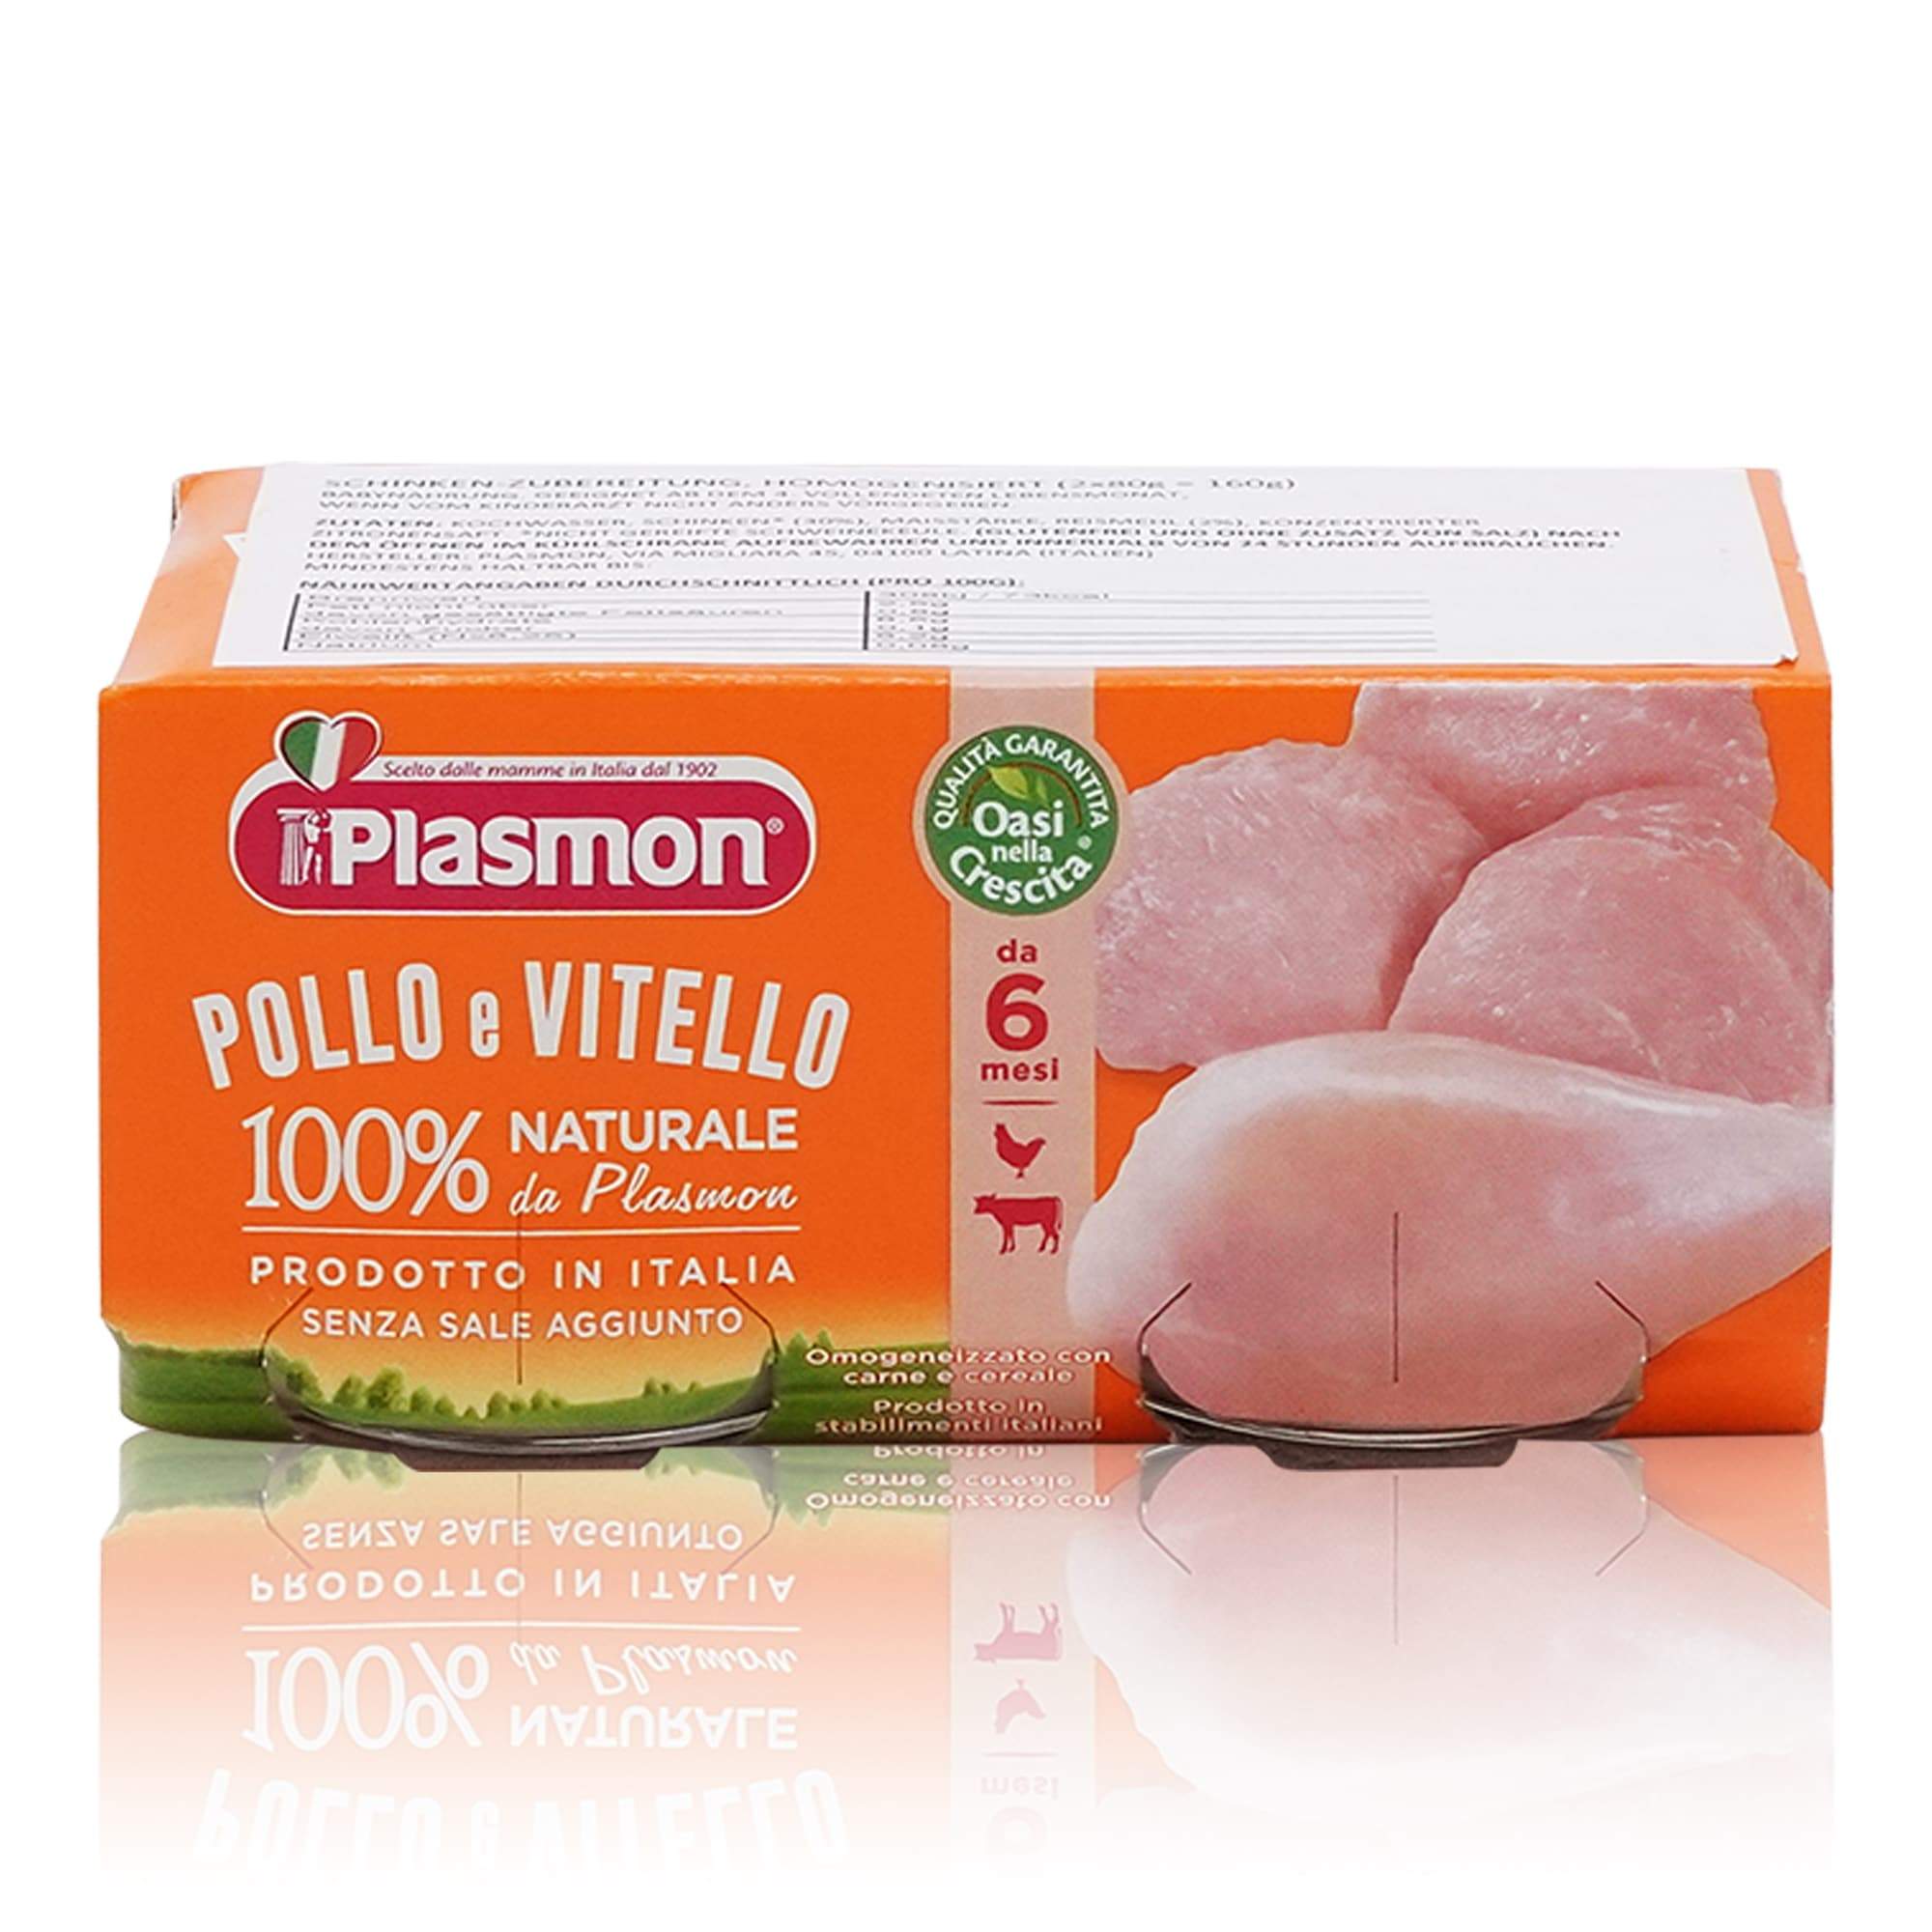 PLASMON Omogeneizzato Pollo e Vitello – Fleischgläschen Hühnchen und Kalb ab dem 4. Monat - 0,160kg - italienisch-einkaufen.de